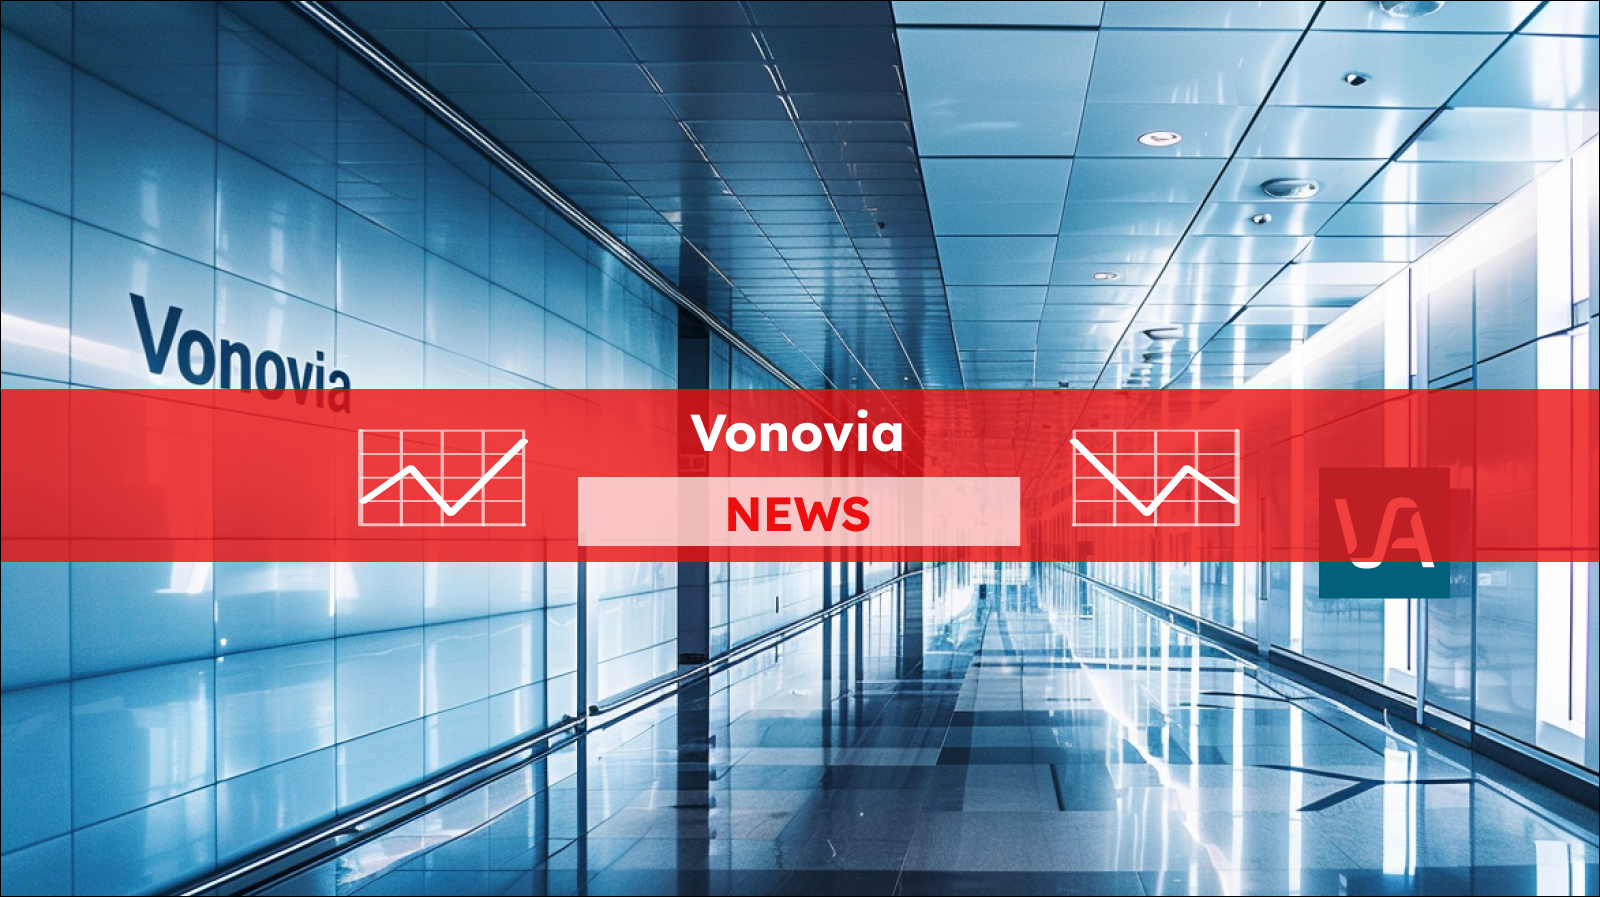 Ein moderner Flur mit reflektierenden blauen Glaswänden, auf denen der Schriftzug Vonovia zu sehen ist, und einem leuchtenden Firmenlogo an einer Säule,  mit einem Vonovia NEWS Banner